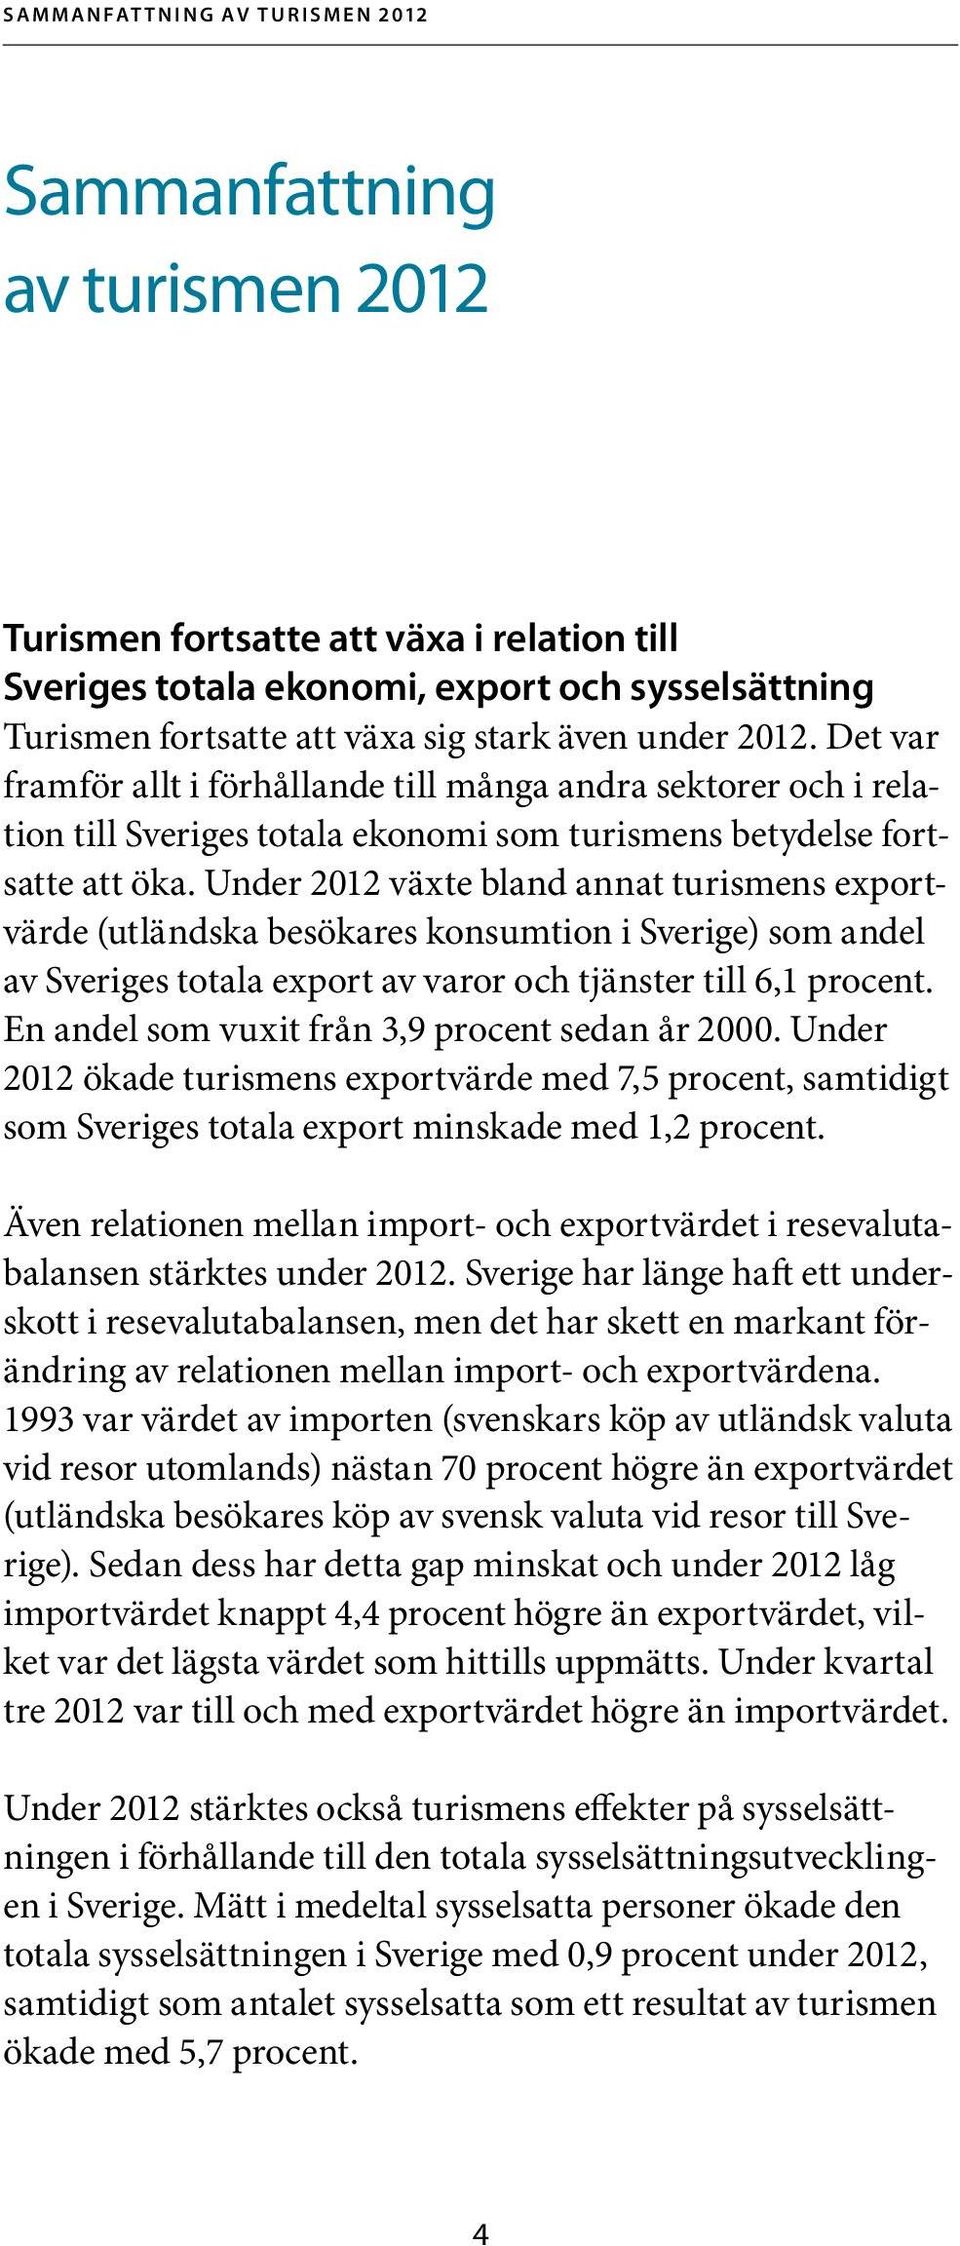 Under 2012 växte bland annat turismens exportvärde (utländska besökares konsumtion i Sverige) som andel av Sveriges totala export av varor och tjänster till 6,1 procent.